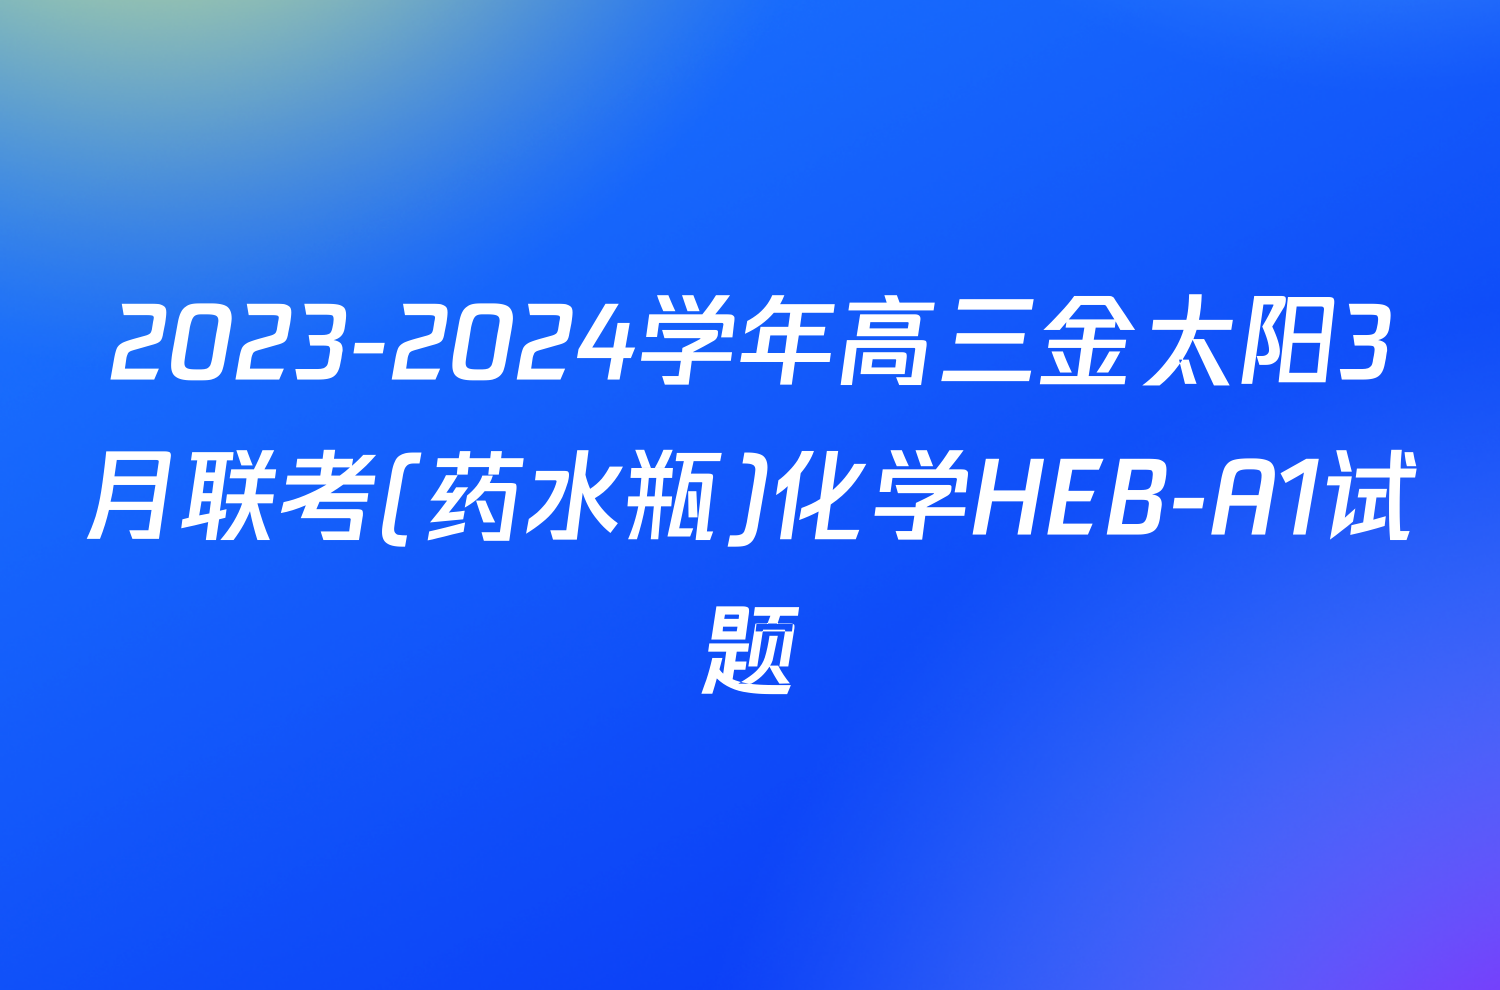 2023-2024学年高三金太阳3月联考(药水瓶)化学HEB-A1试题